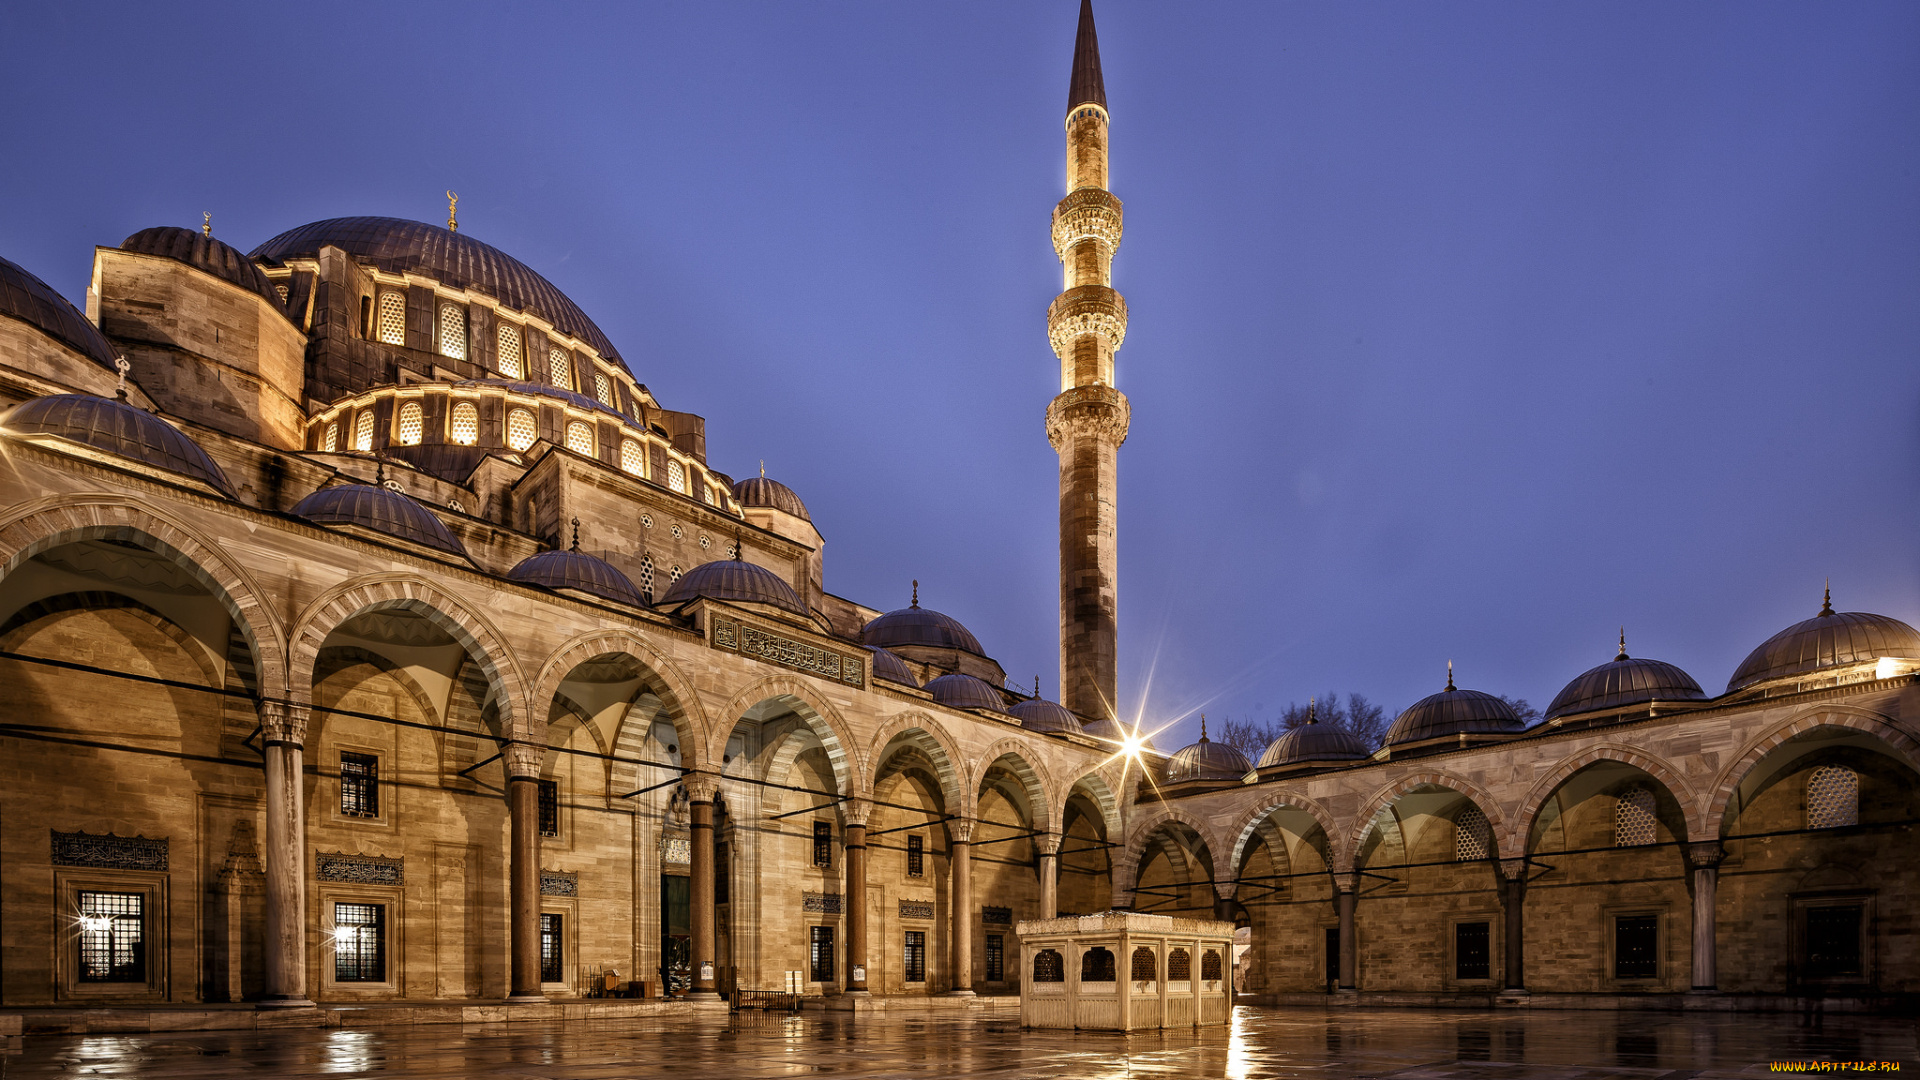 города, -, мечети, , медресе, turkey, suleymaniye, mosque, небо, синее, турция, ночь, стамбул, istanbul, город, архитектура, освещение, city, мечеть, сулеймание